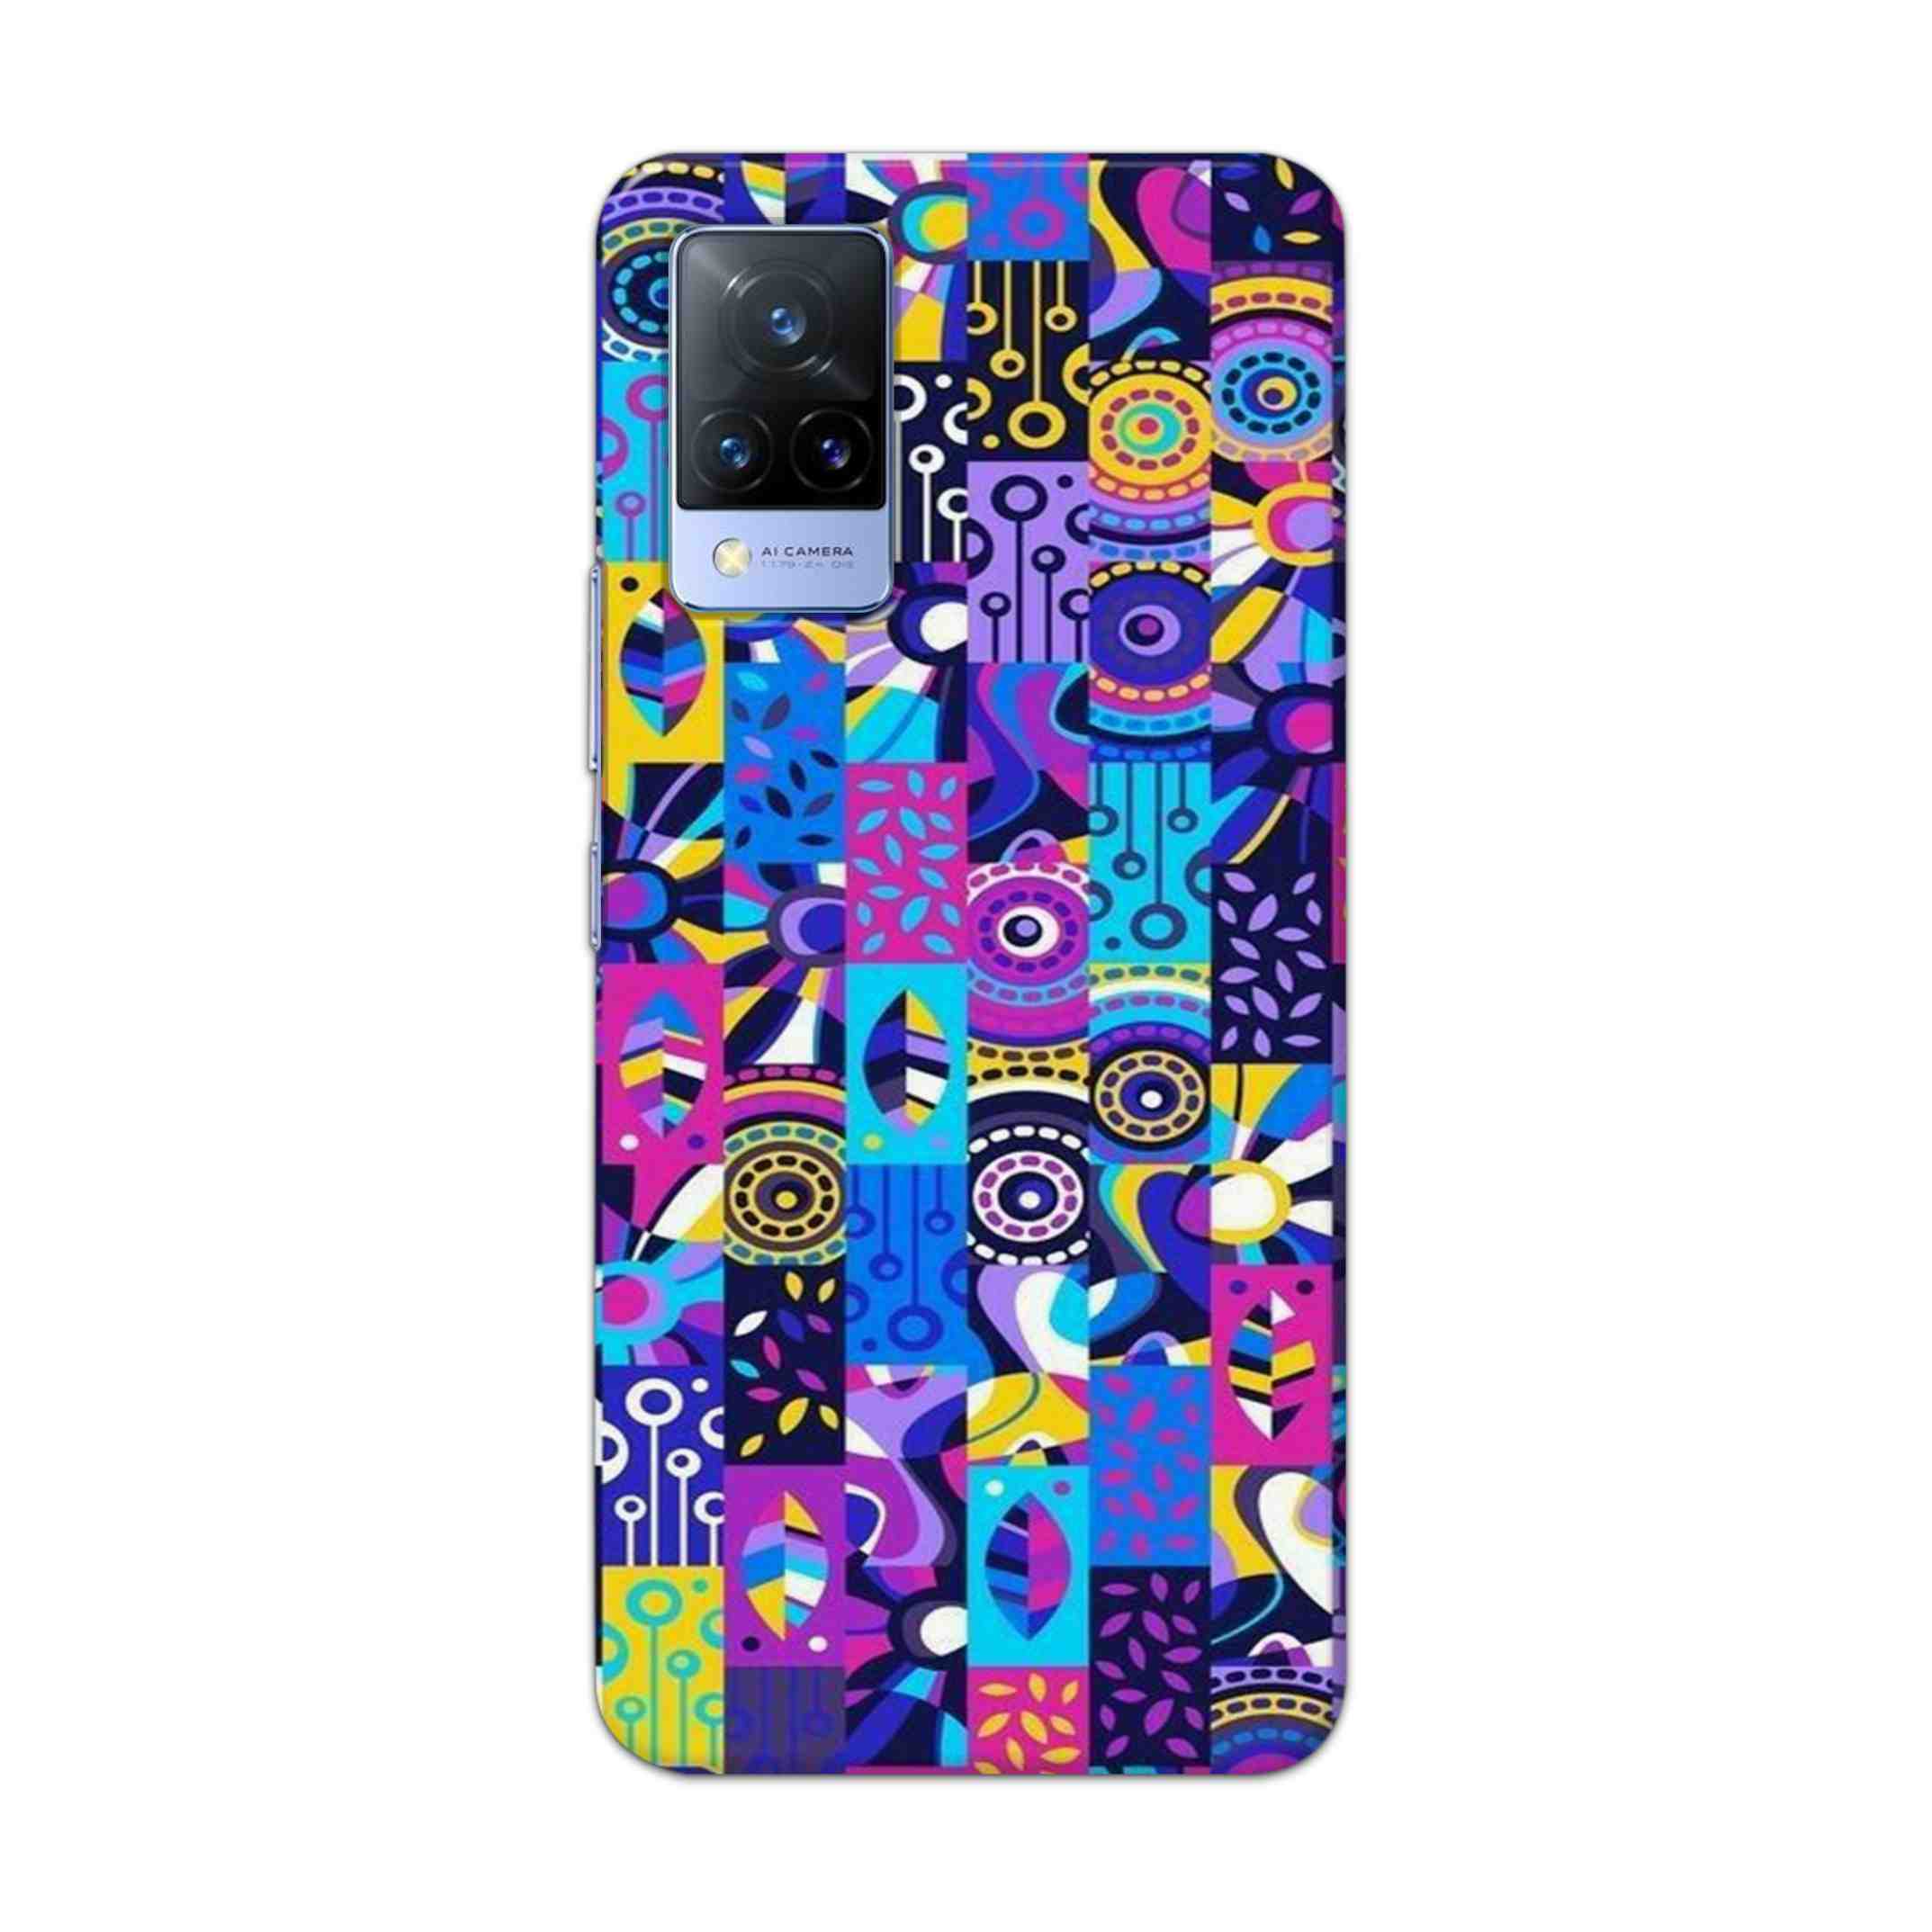 Buy Rainbow Art Hard Back Mobile Phone Case Cover For Vivo V21 Online